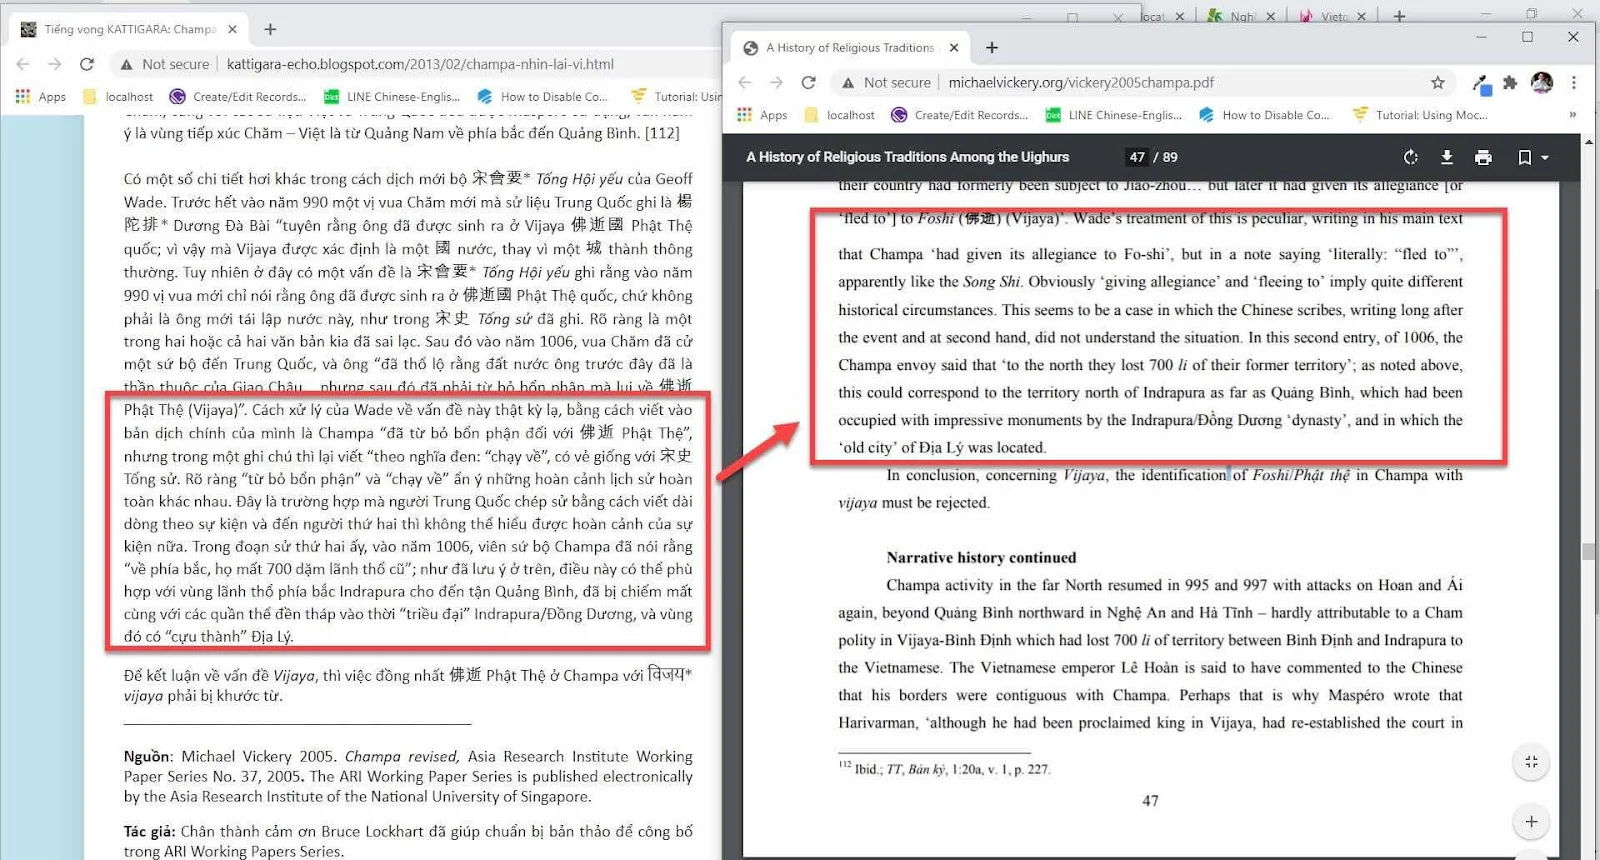 Về thầy Hà Hữu Nga đã dịch bậy gần hết một đoạn văn về sử Chàm của thầy Michael Vickery như thế nào ?